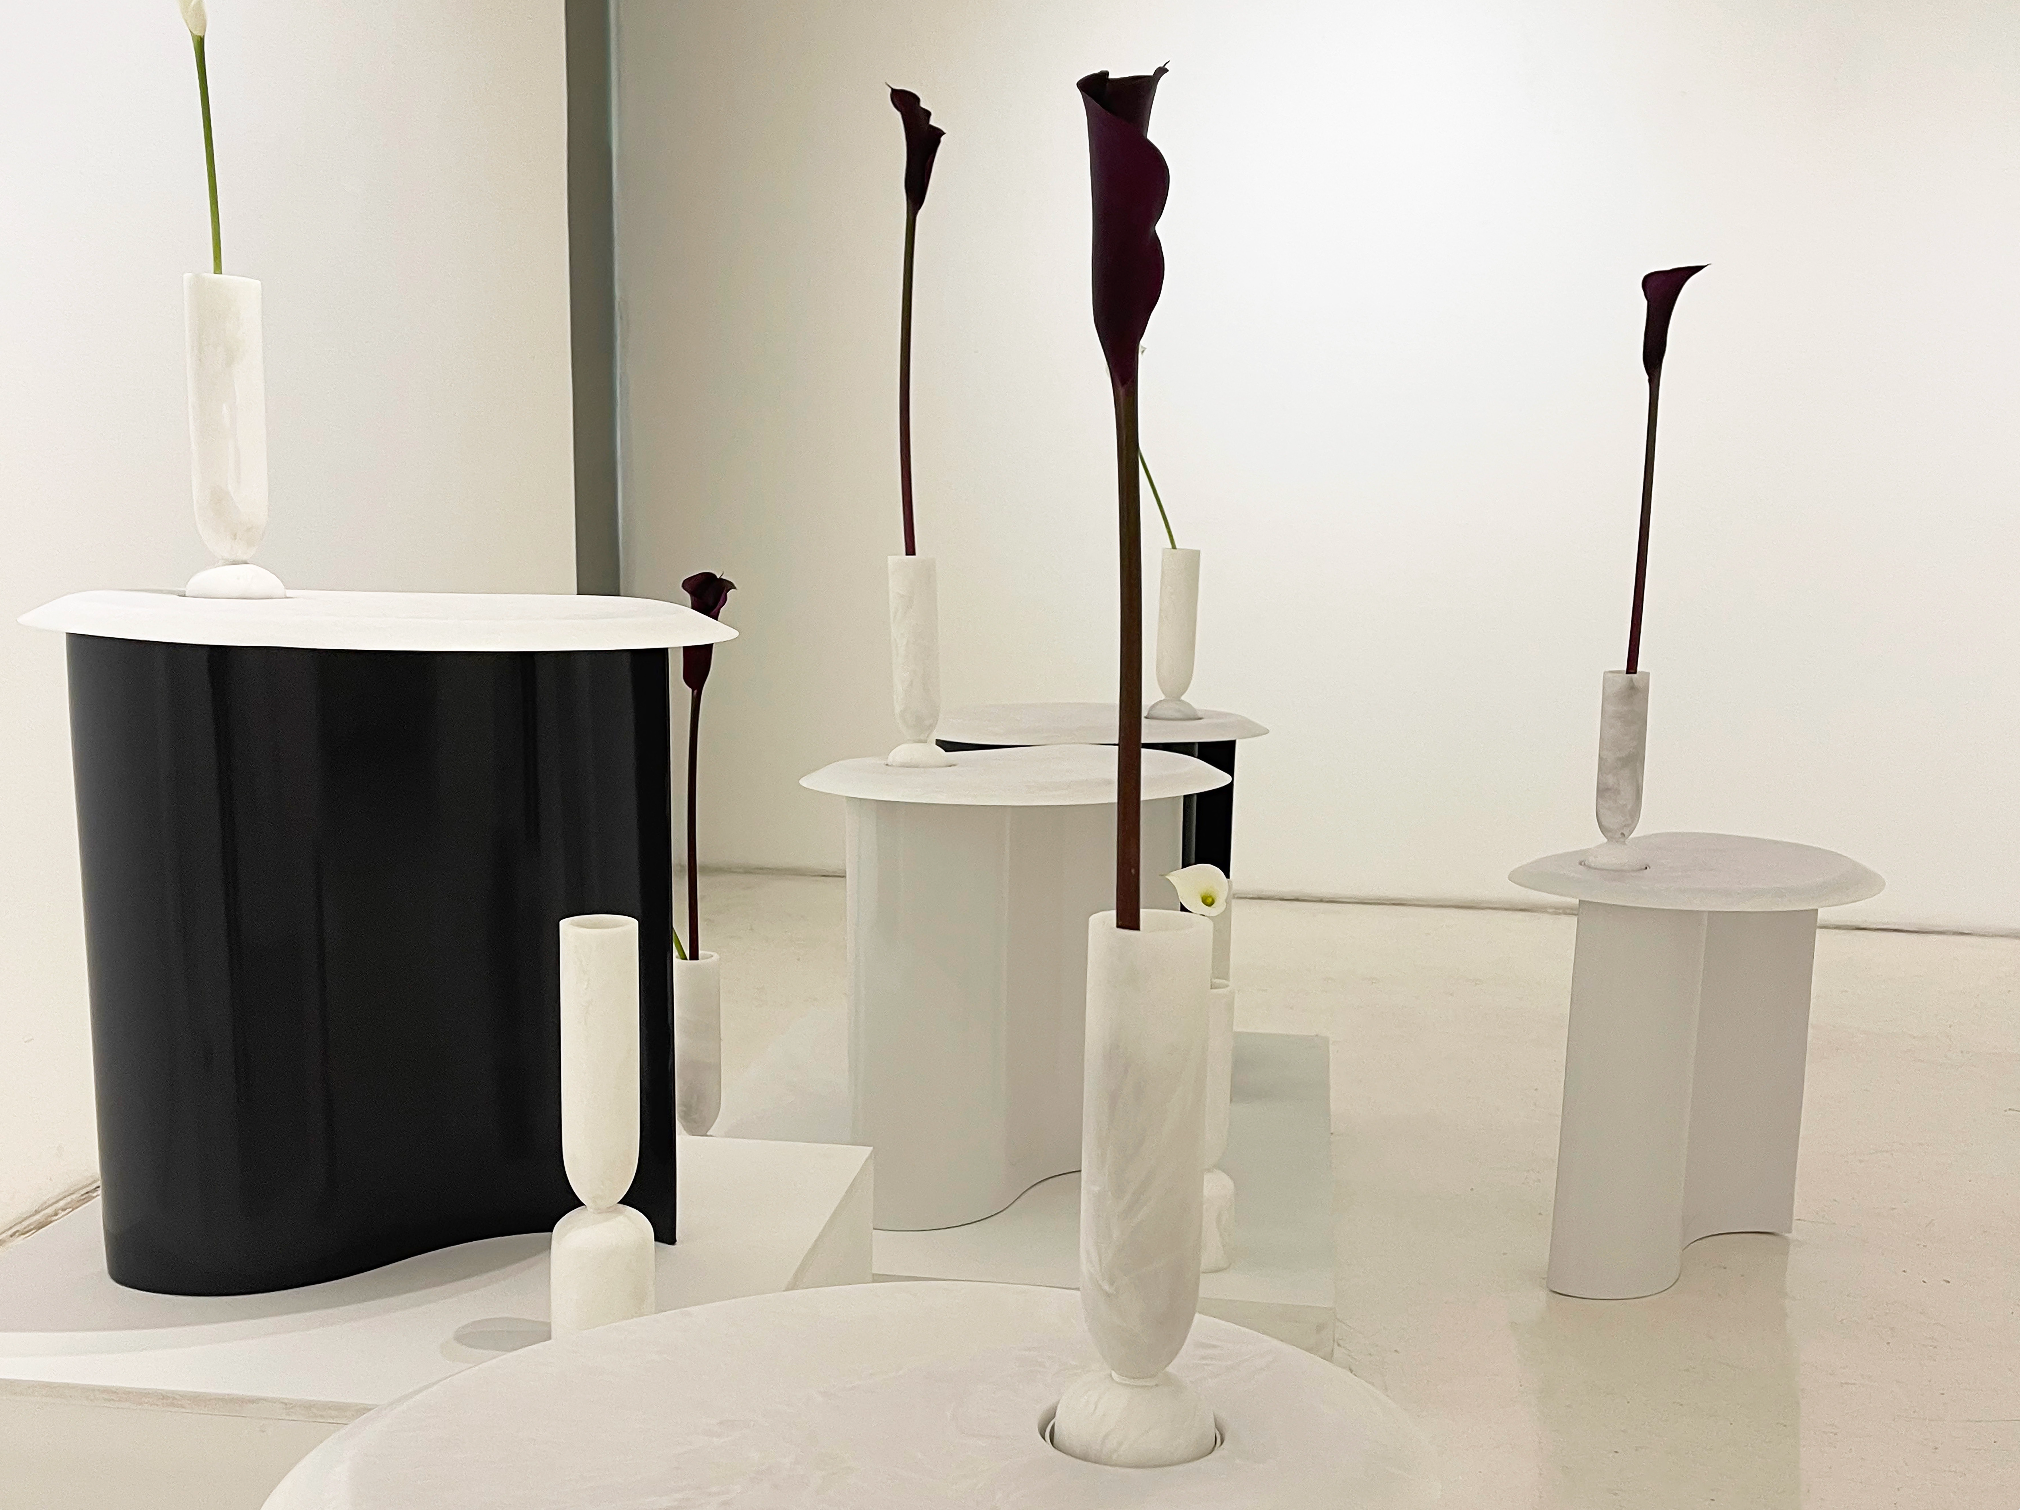 Exposición Fazlamare 2022 / Galeria Artespacio; Mes del Diseño Ministerio de las Culturas, las artes & el patrimonio